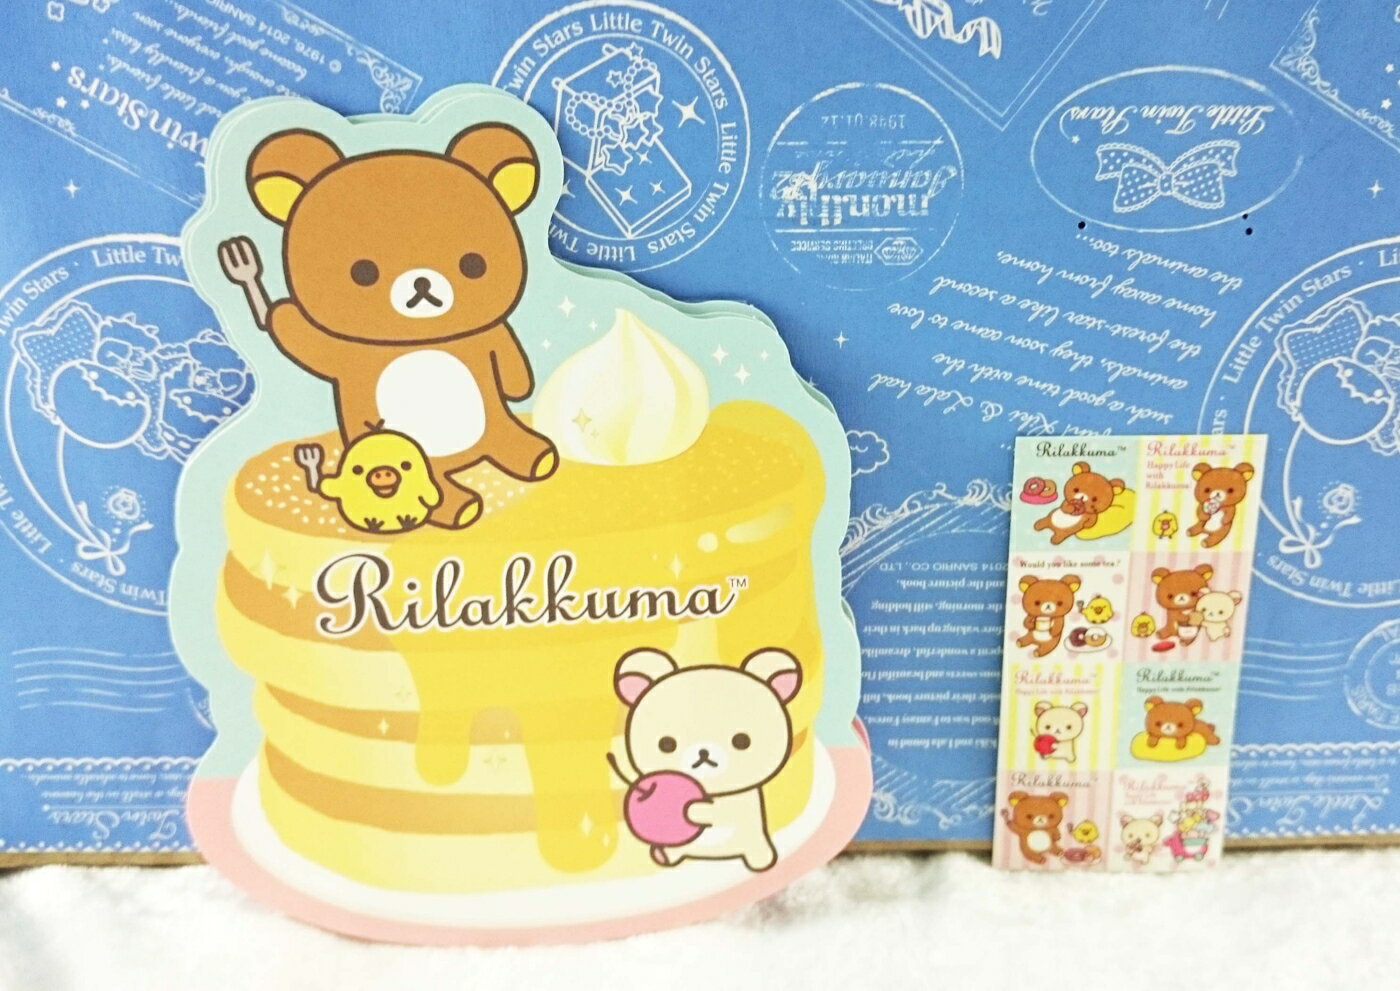 【震撼精品百貨】Rilakkuma San-X 拉拉熊懶懶熊 紅包袋 鬆餅 震撼日式精品百貨